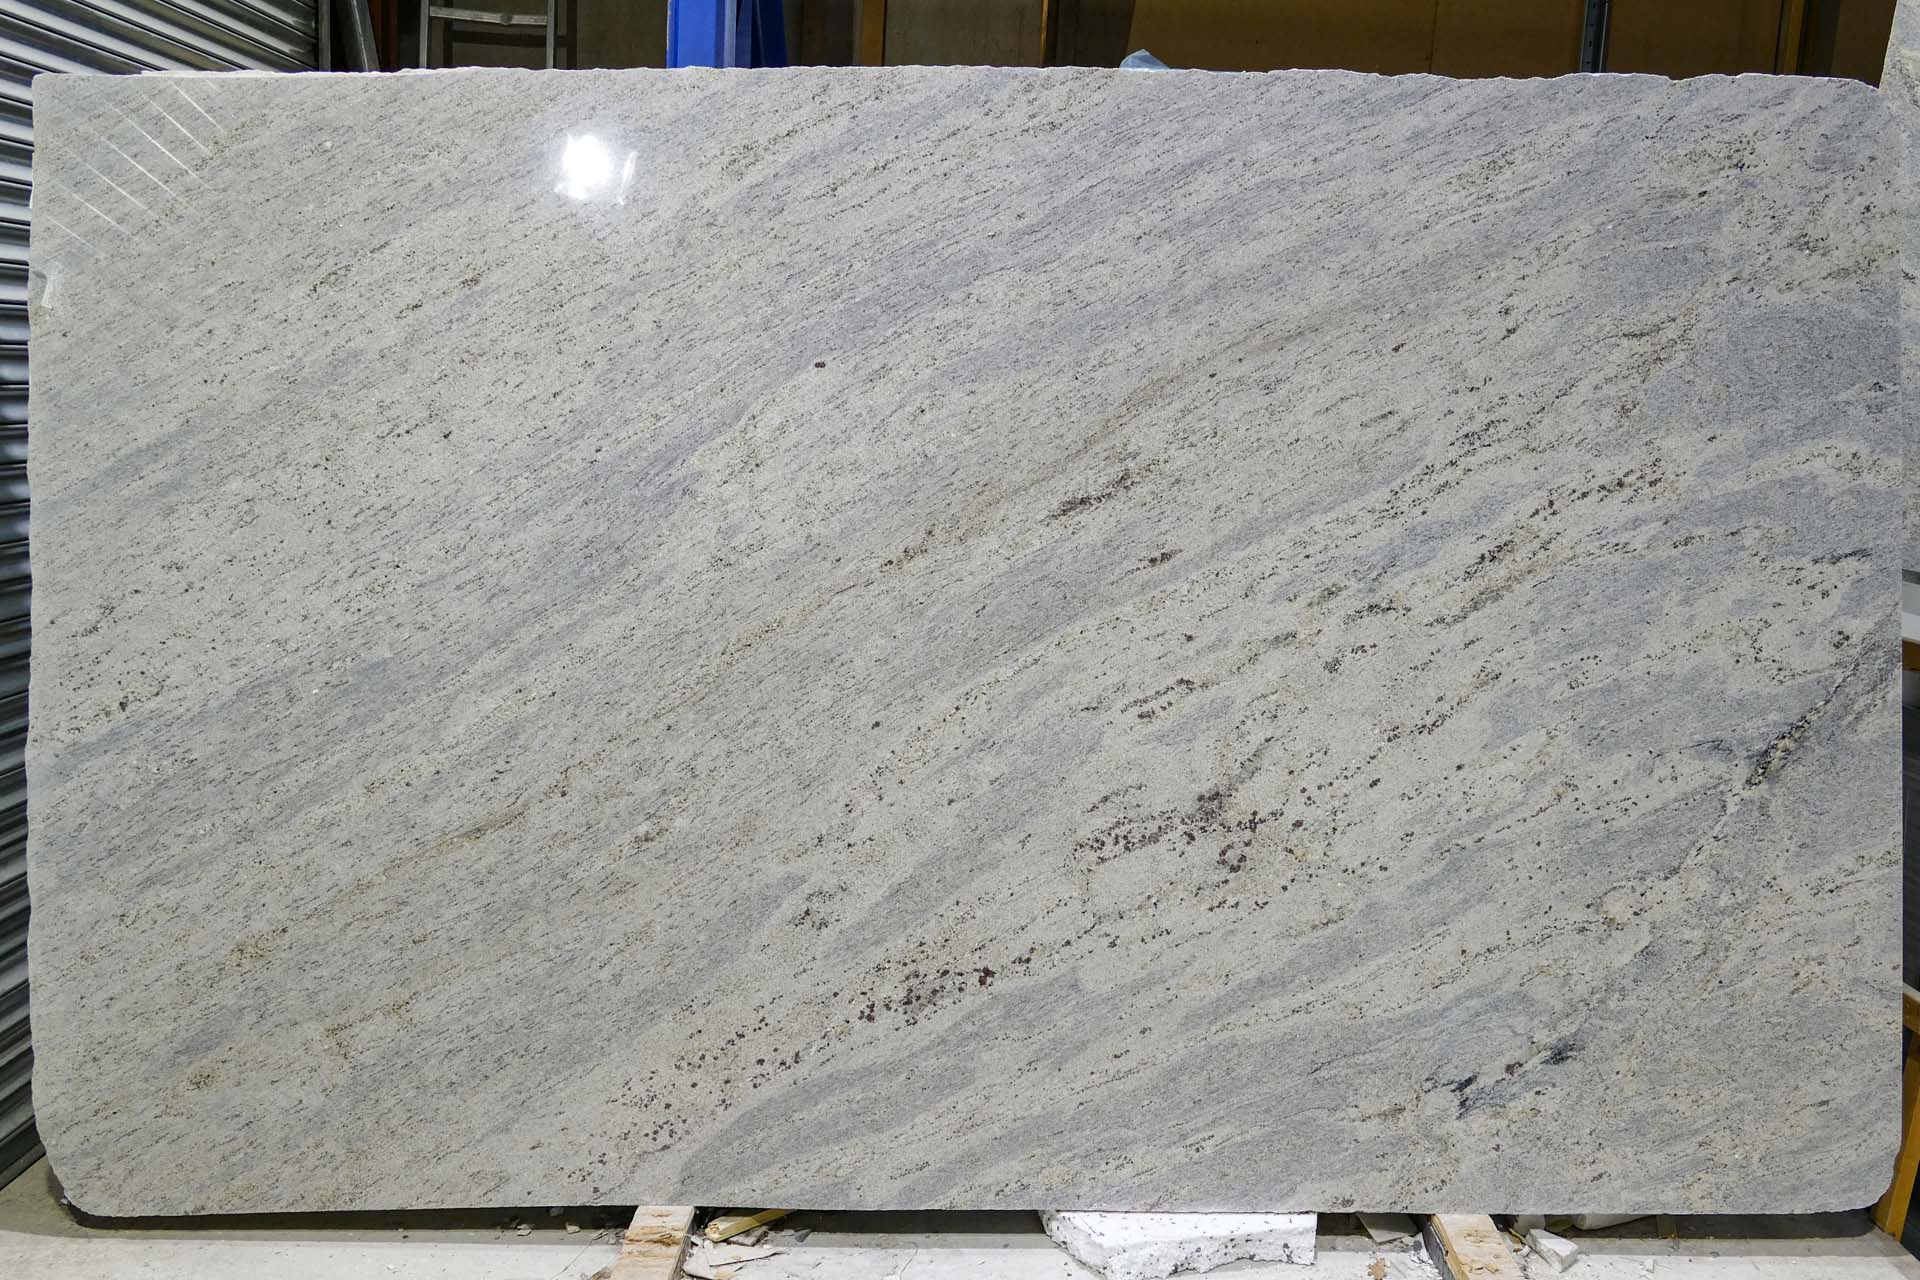 Kashmir White Granite SW181213 34644 151403a